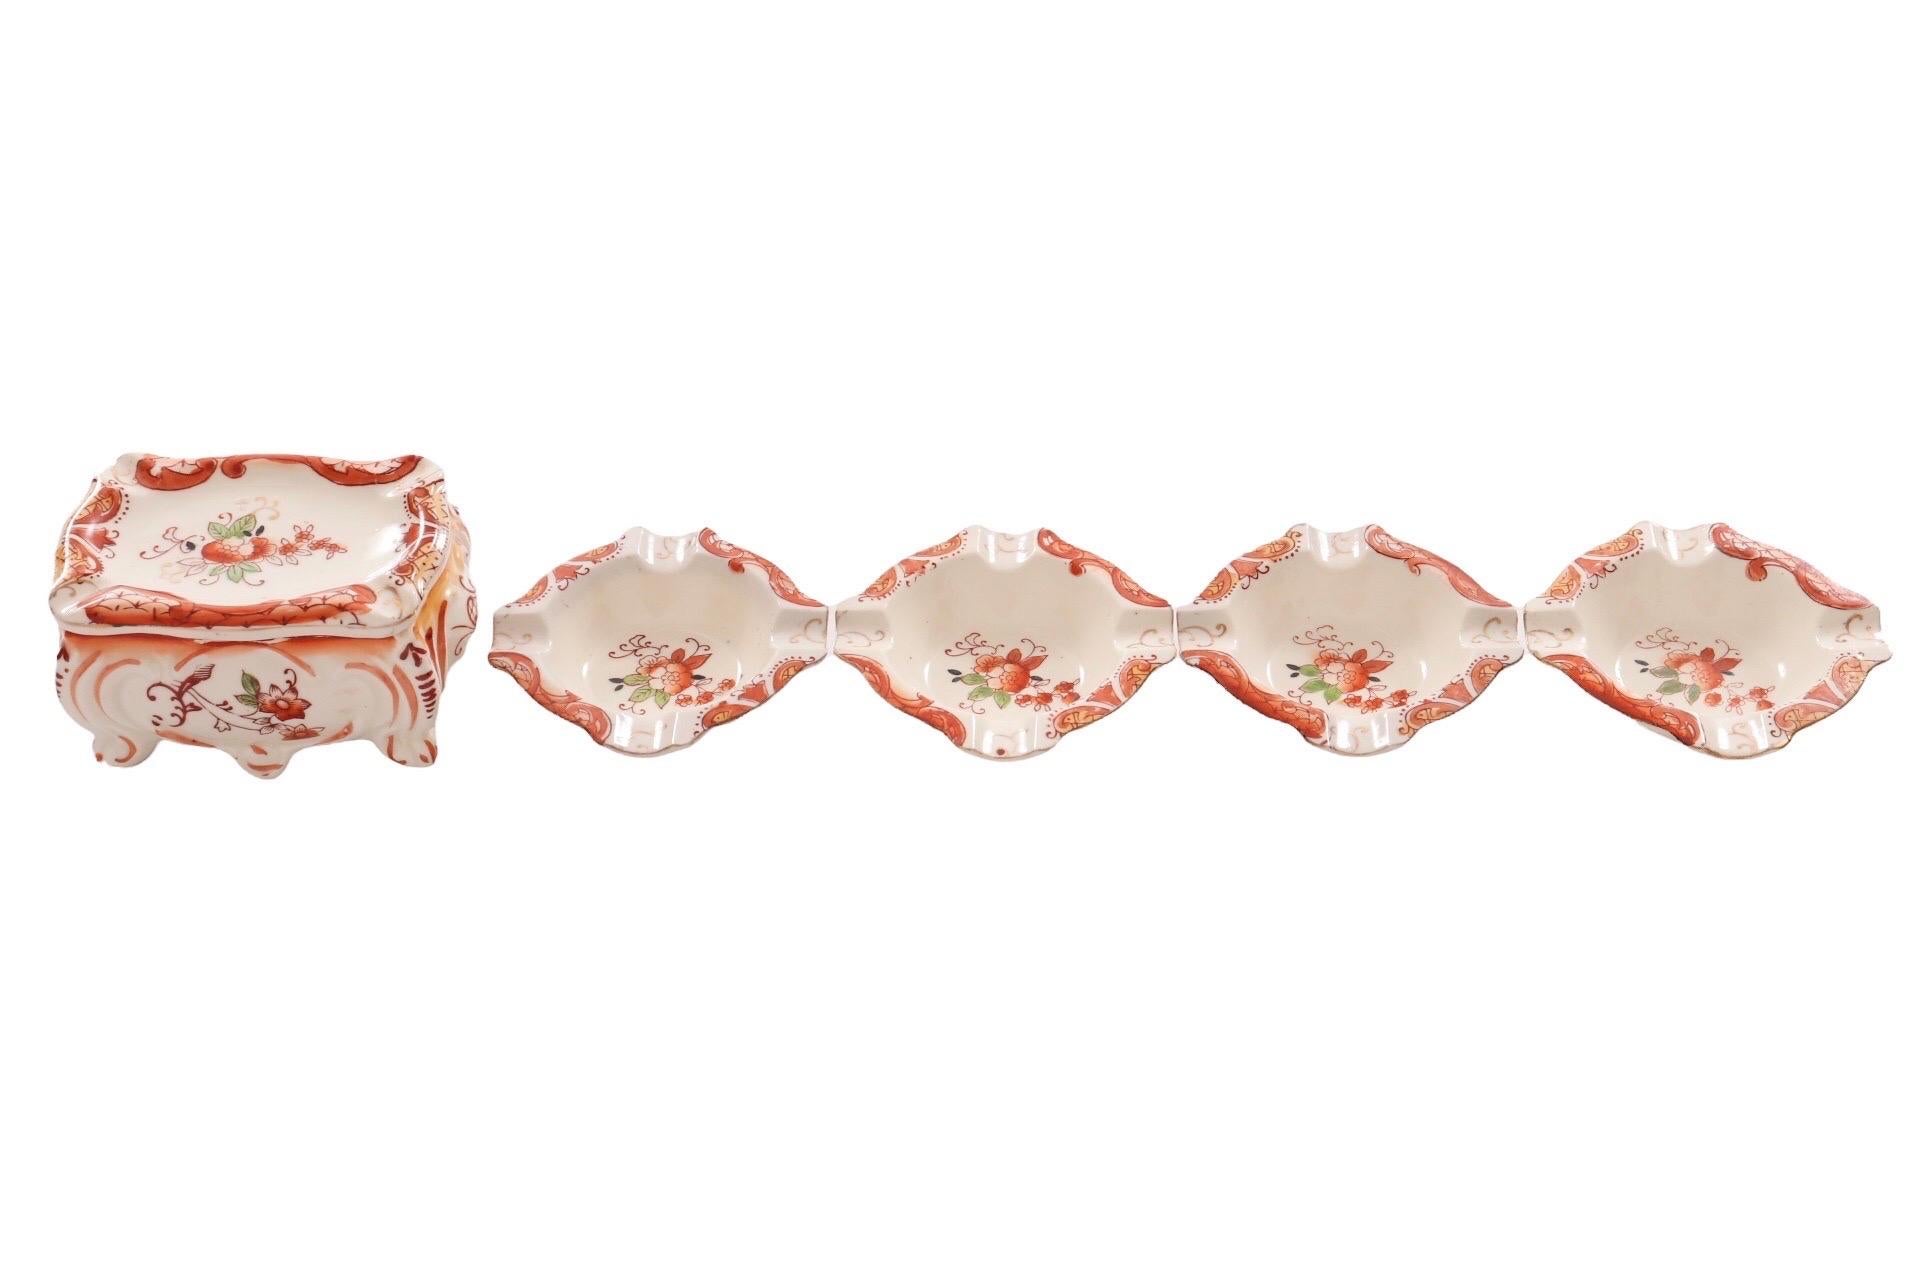 Porte-cigarettes en porcelaine japonaise et quatre cendriers assortis. Fabriqué par la société Takito (1880-1948) et peint à la main d'un motif floral en rouge. La marque du fabricant Double Diamond TT est visible sur la base. Le porte-cigarette